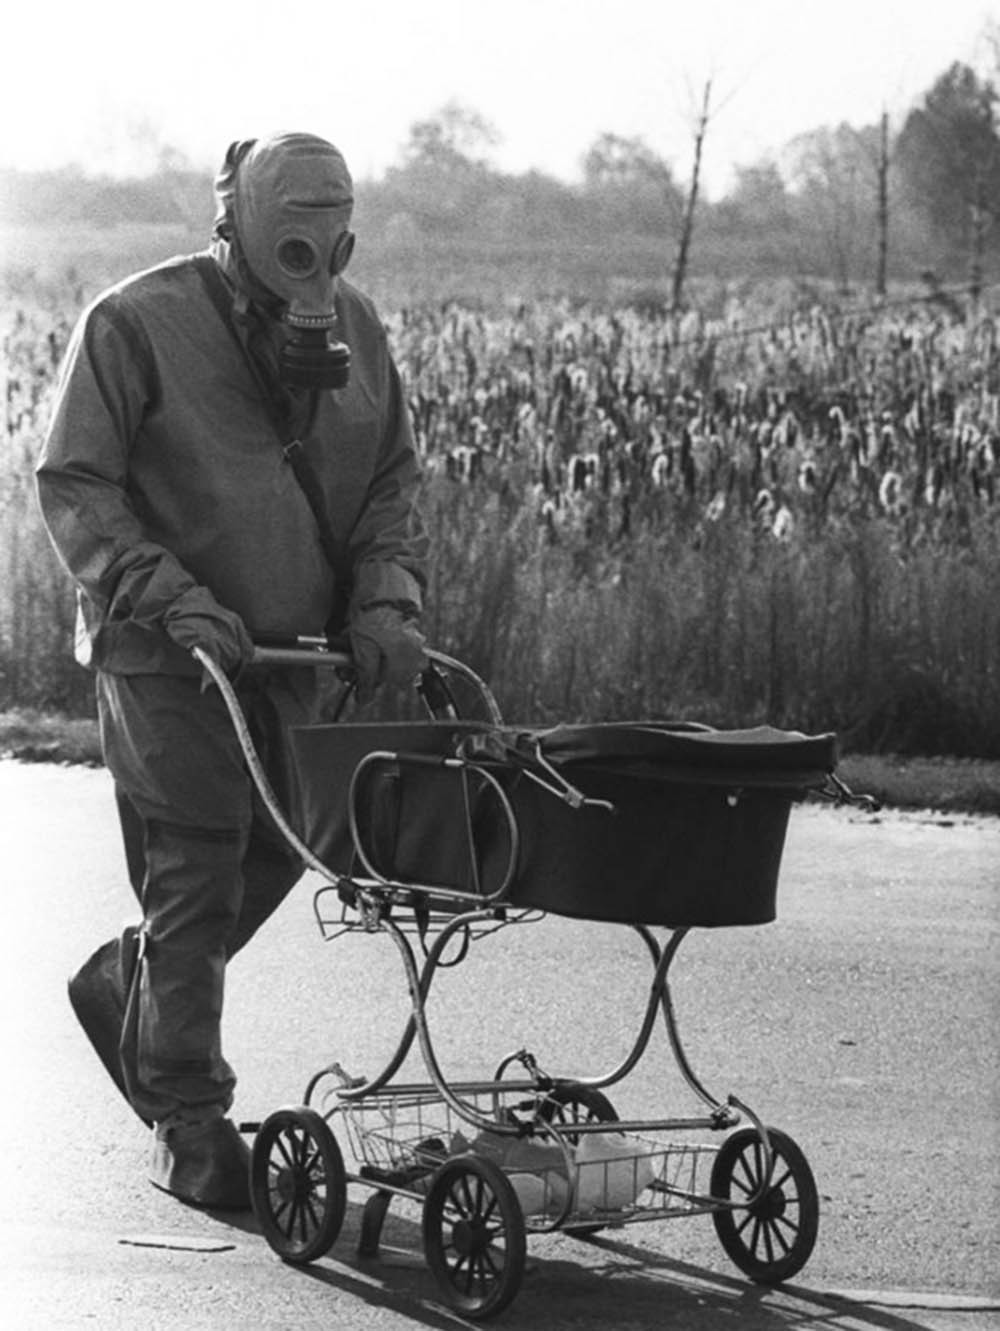 Сегодня это фото, сделанное в 1986 году в Чернобыле имеет новый, тревожный подтекст. Радиация мстит потокам ликвидаторов.